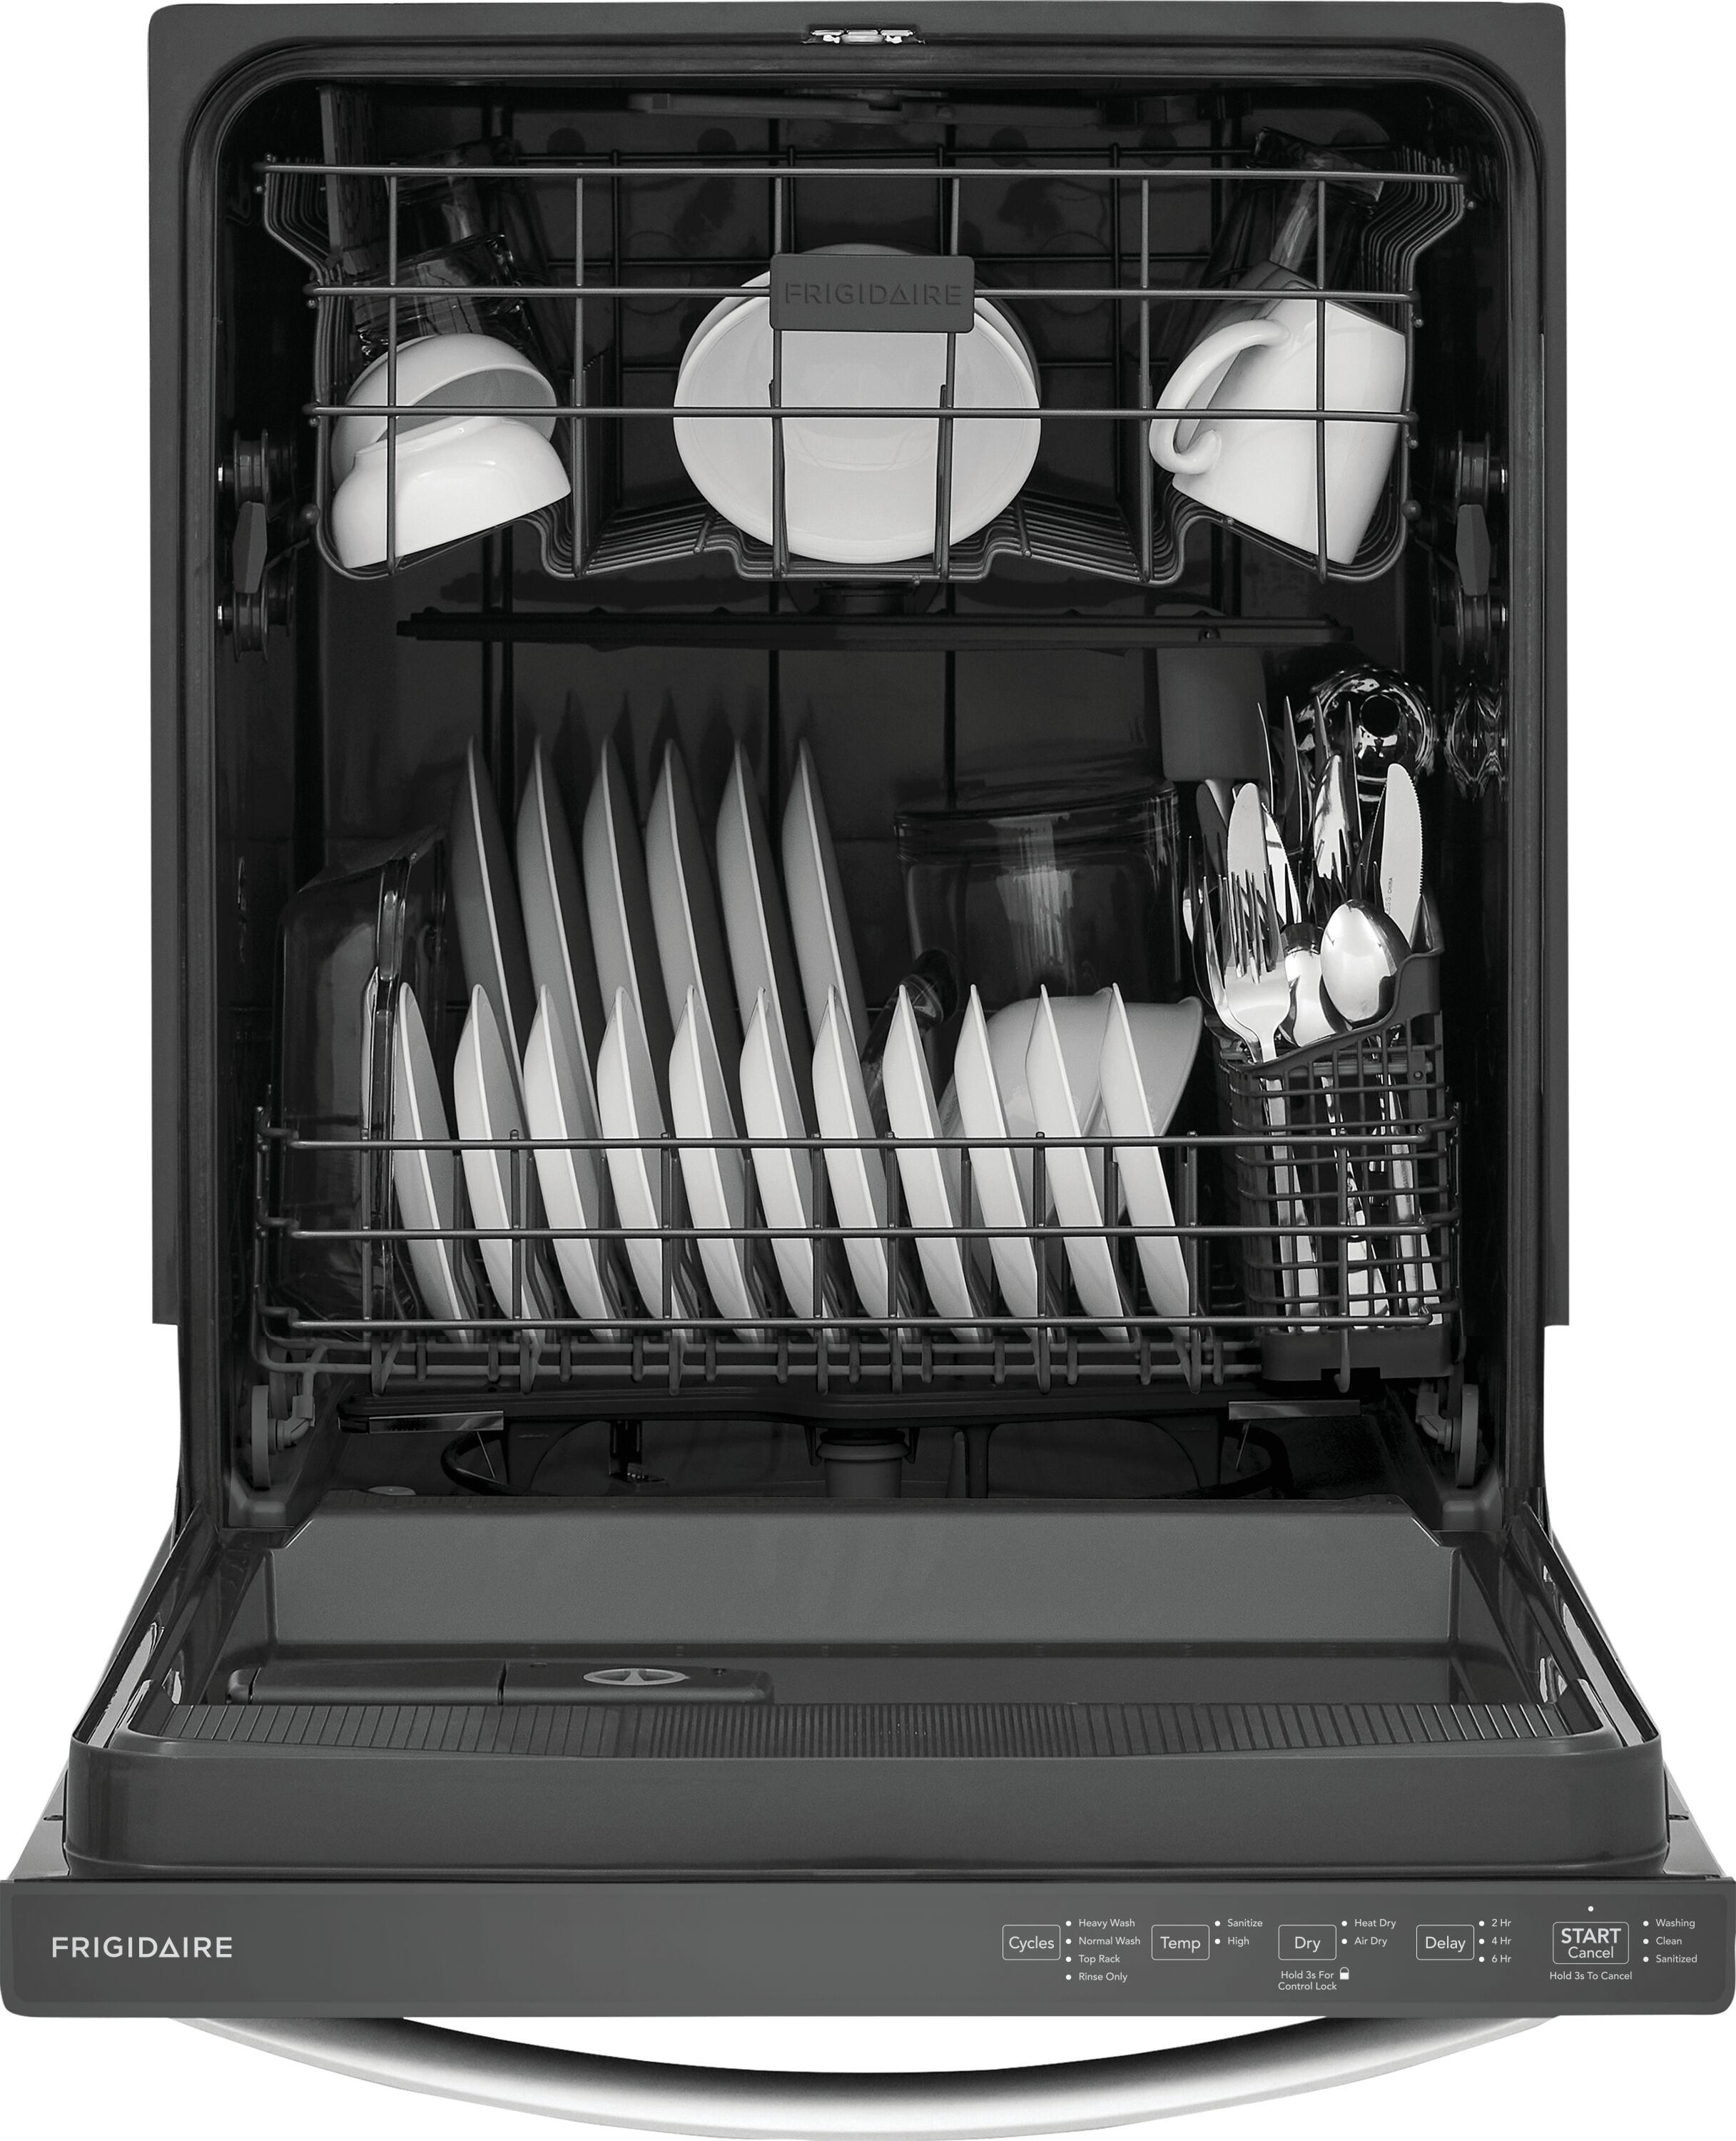 Frigidaire Dishwasher FFBD2412SS2A - appliances - by owner - sale